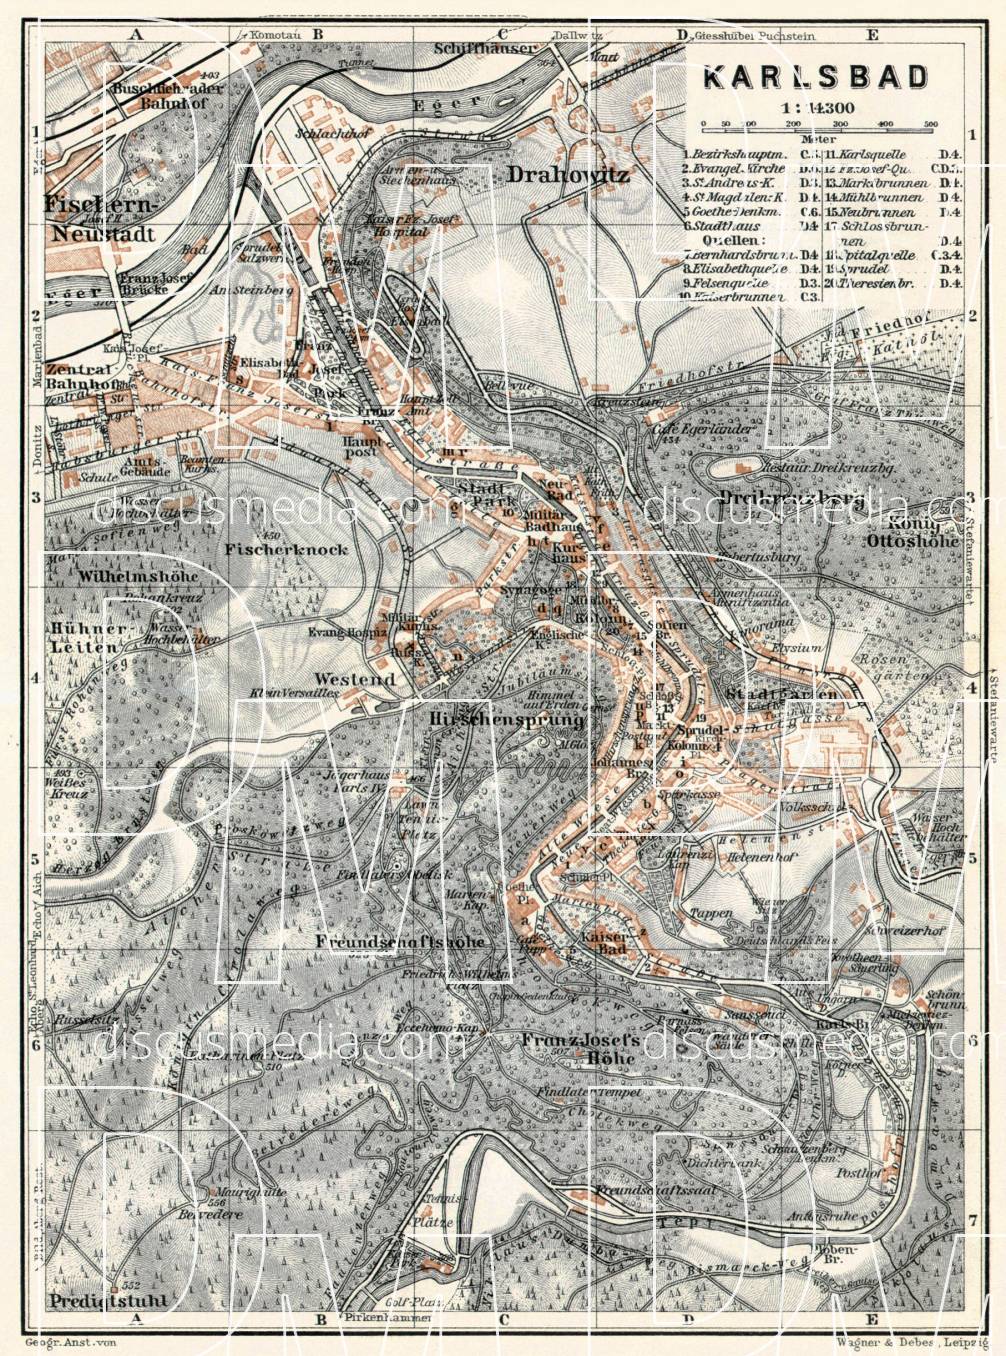 Old map of Karlsbad (Karlový Vary) in 1910. Buy vintage map replica